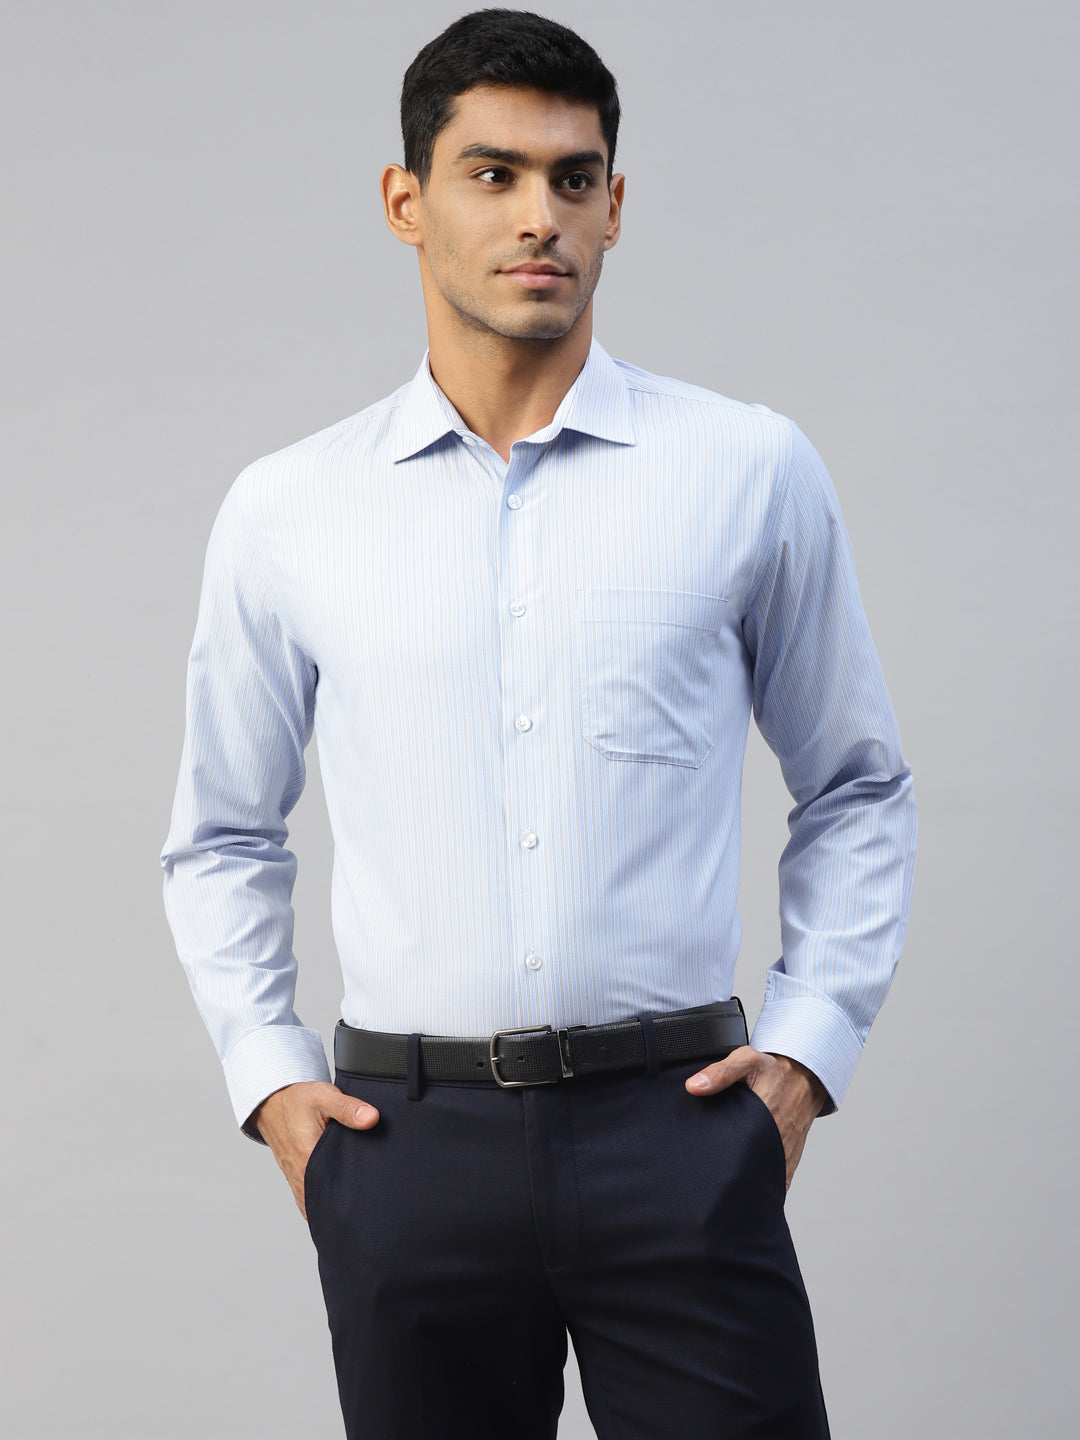 Don Vino Men's Light Blue Stripes Formal Slim Fit Shirt